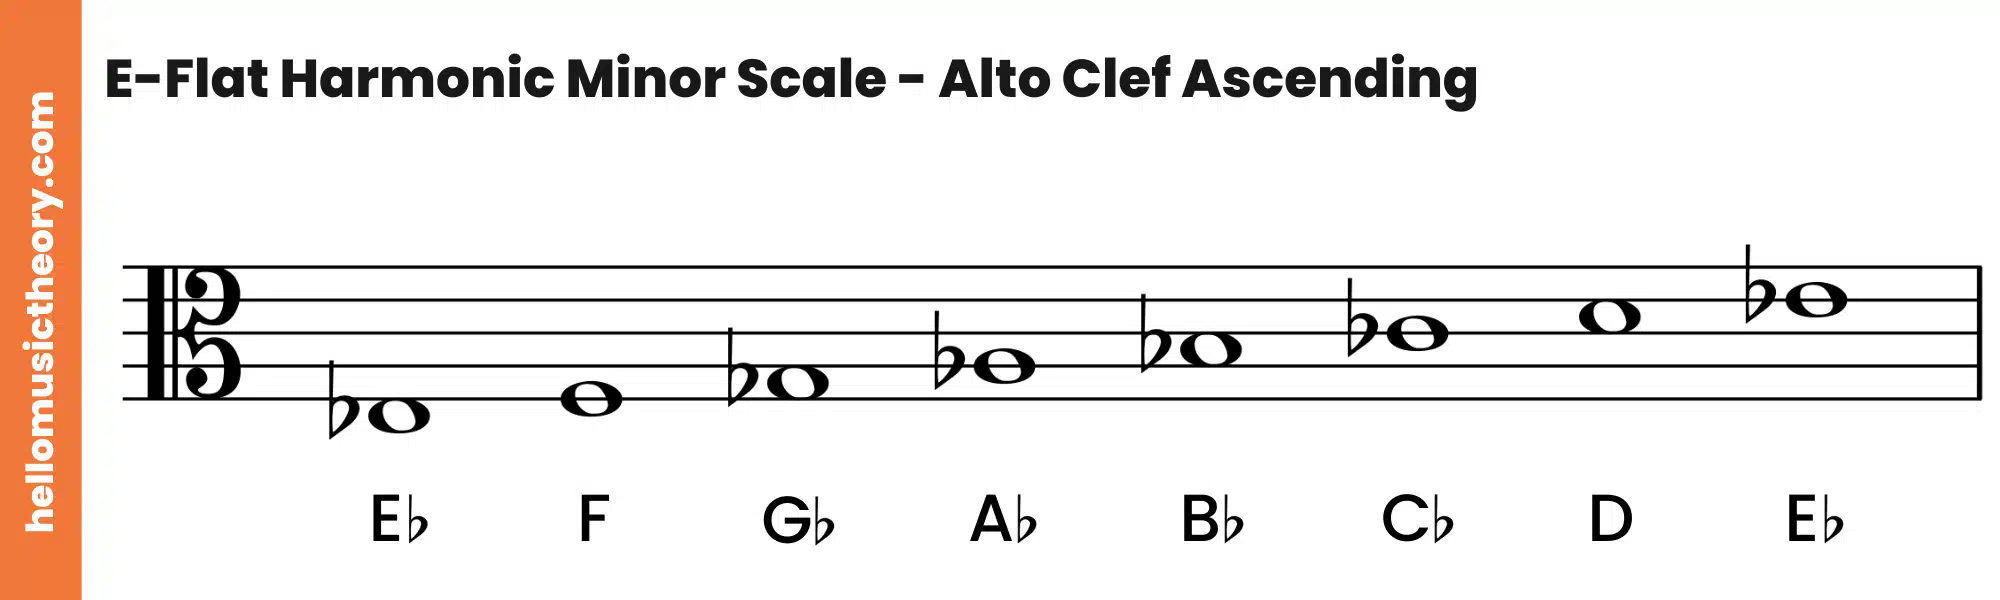 E-Flat Harmonic Minor Scale Alto Clef Ascending